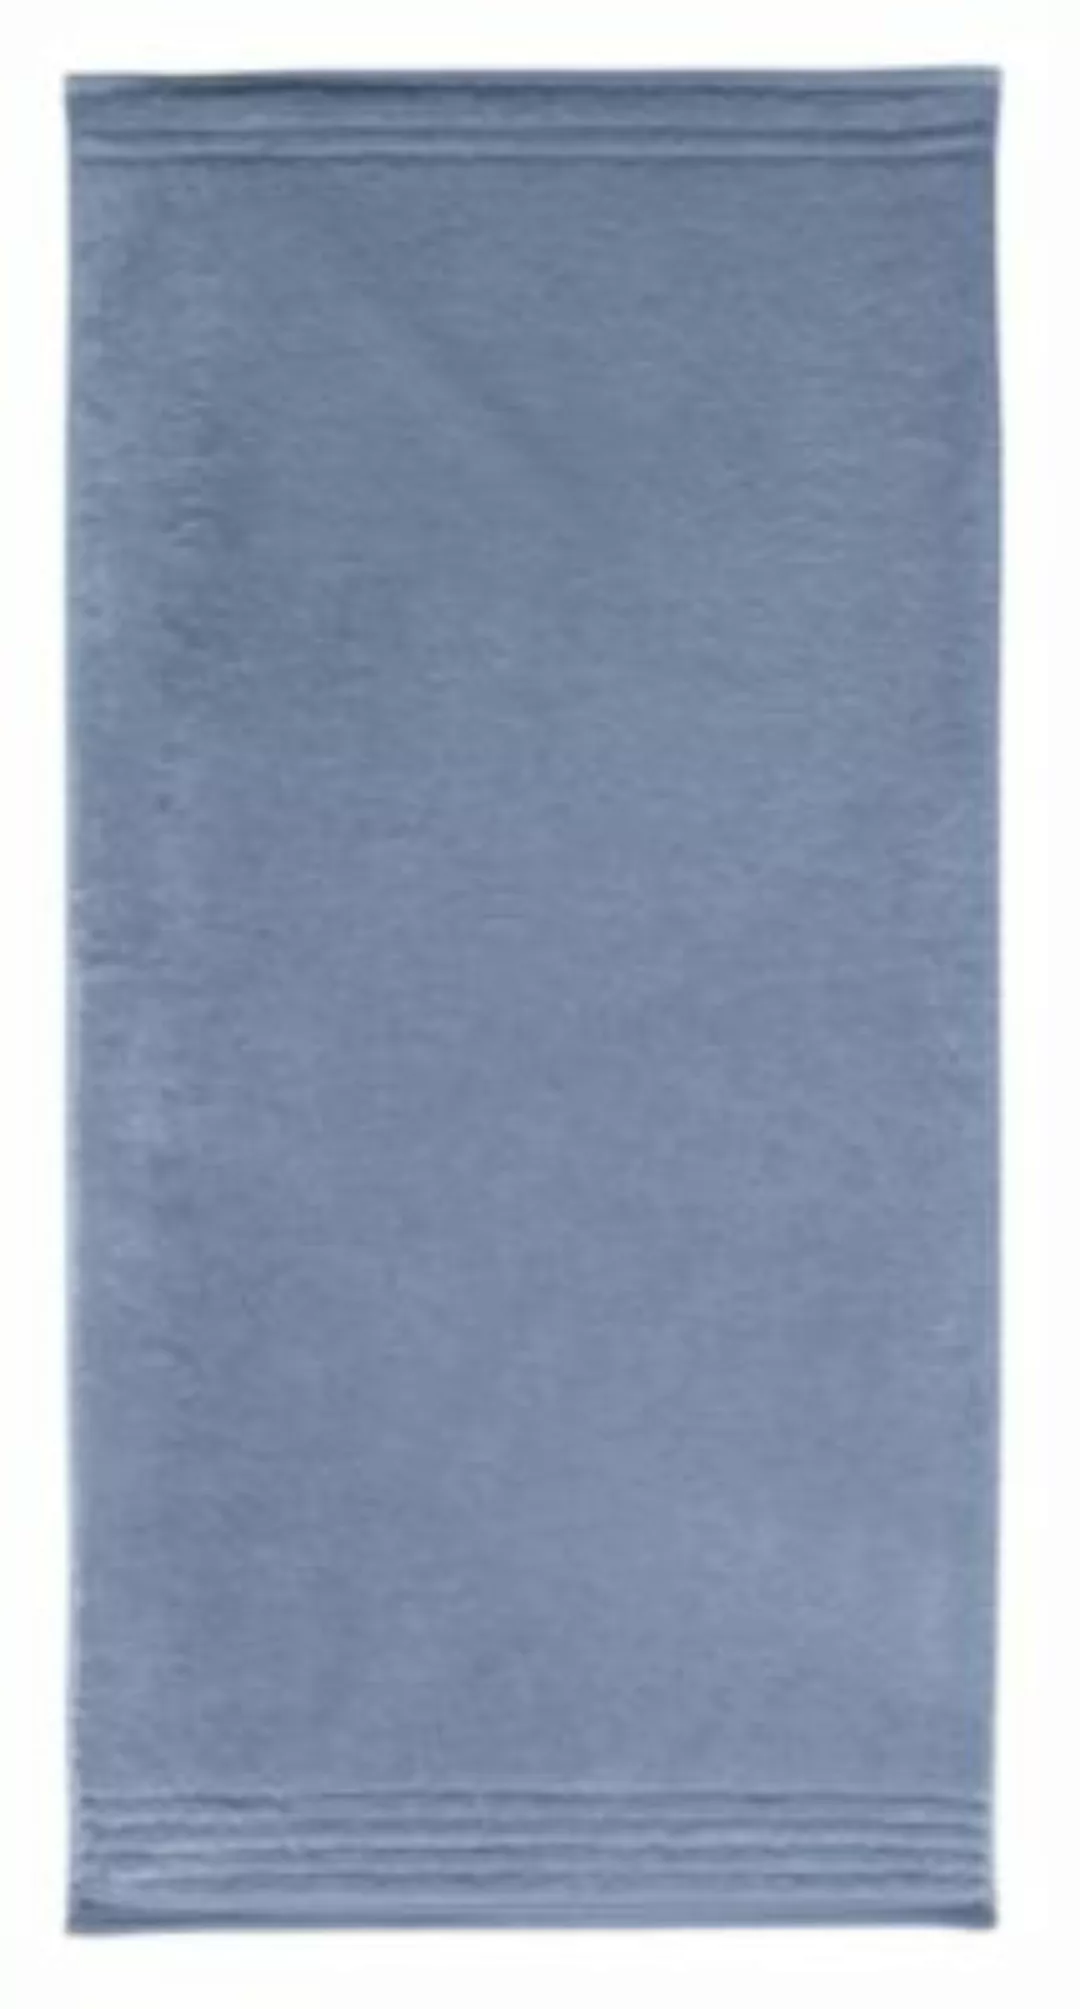 Vossen Duschtuch Vienna Style Supersoft blau Gr. 80 x 160 günstig online kaufen